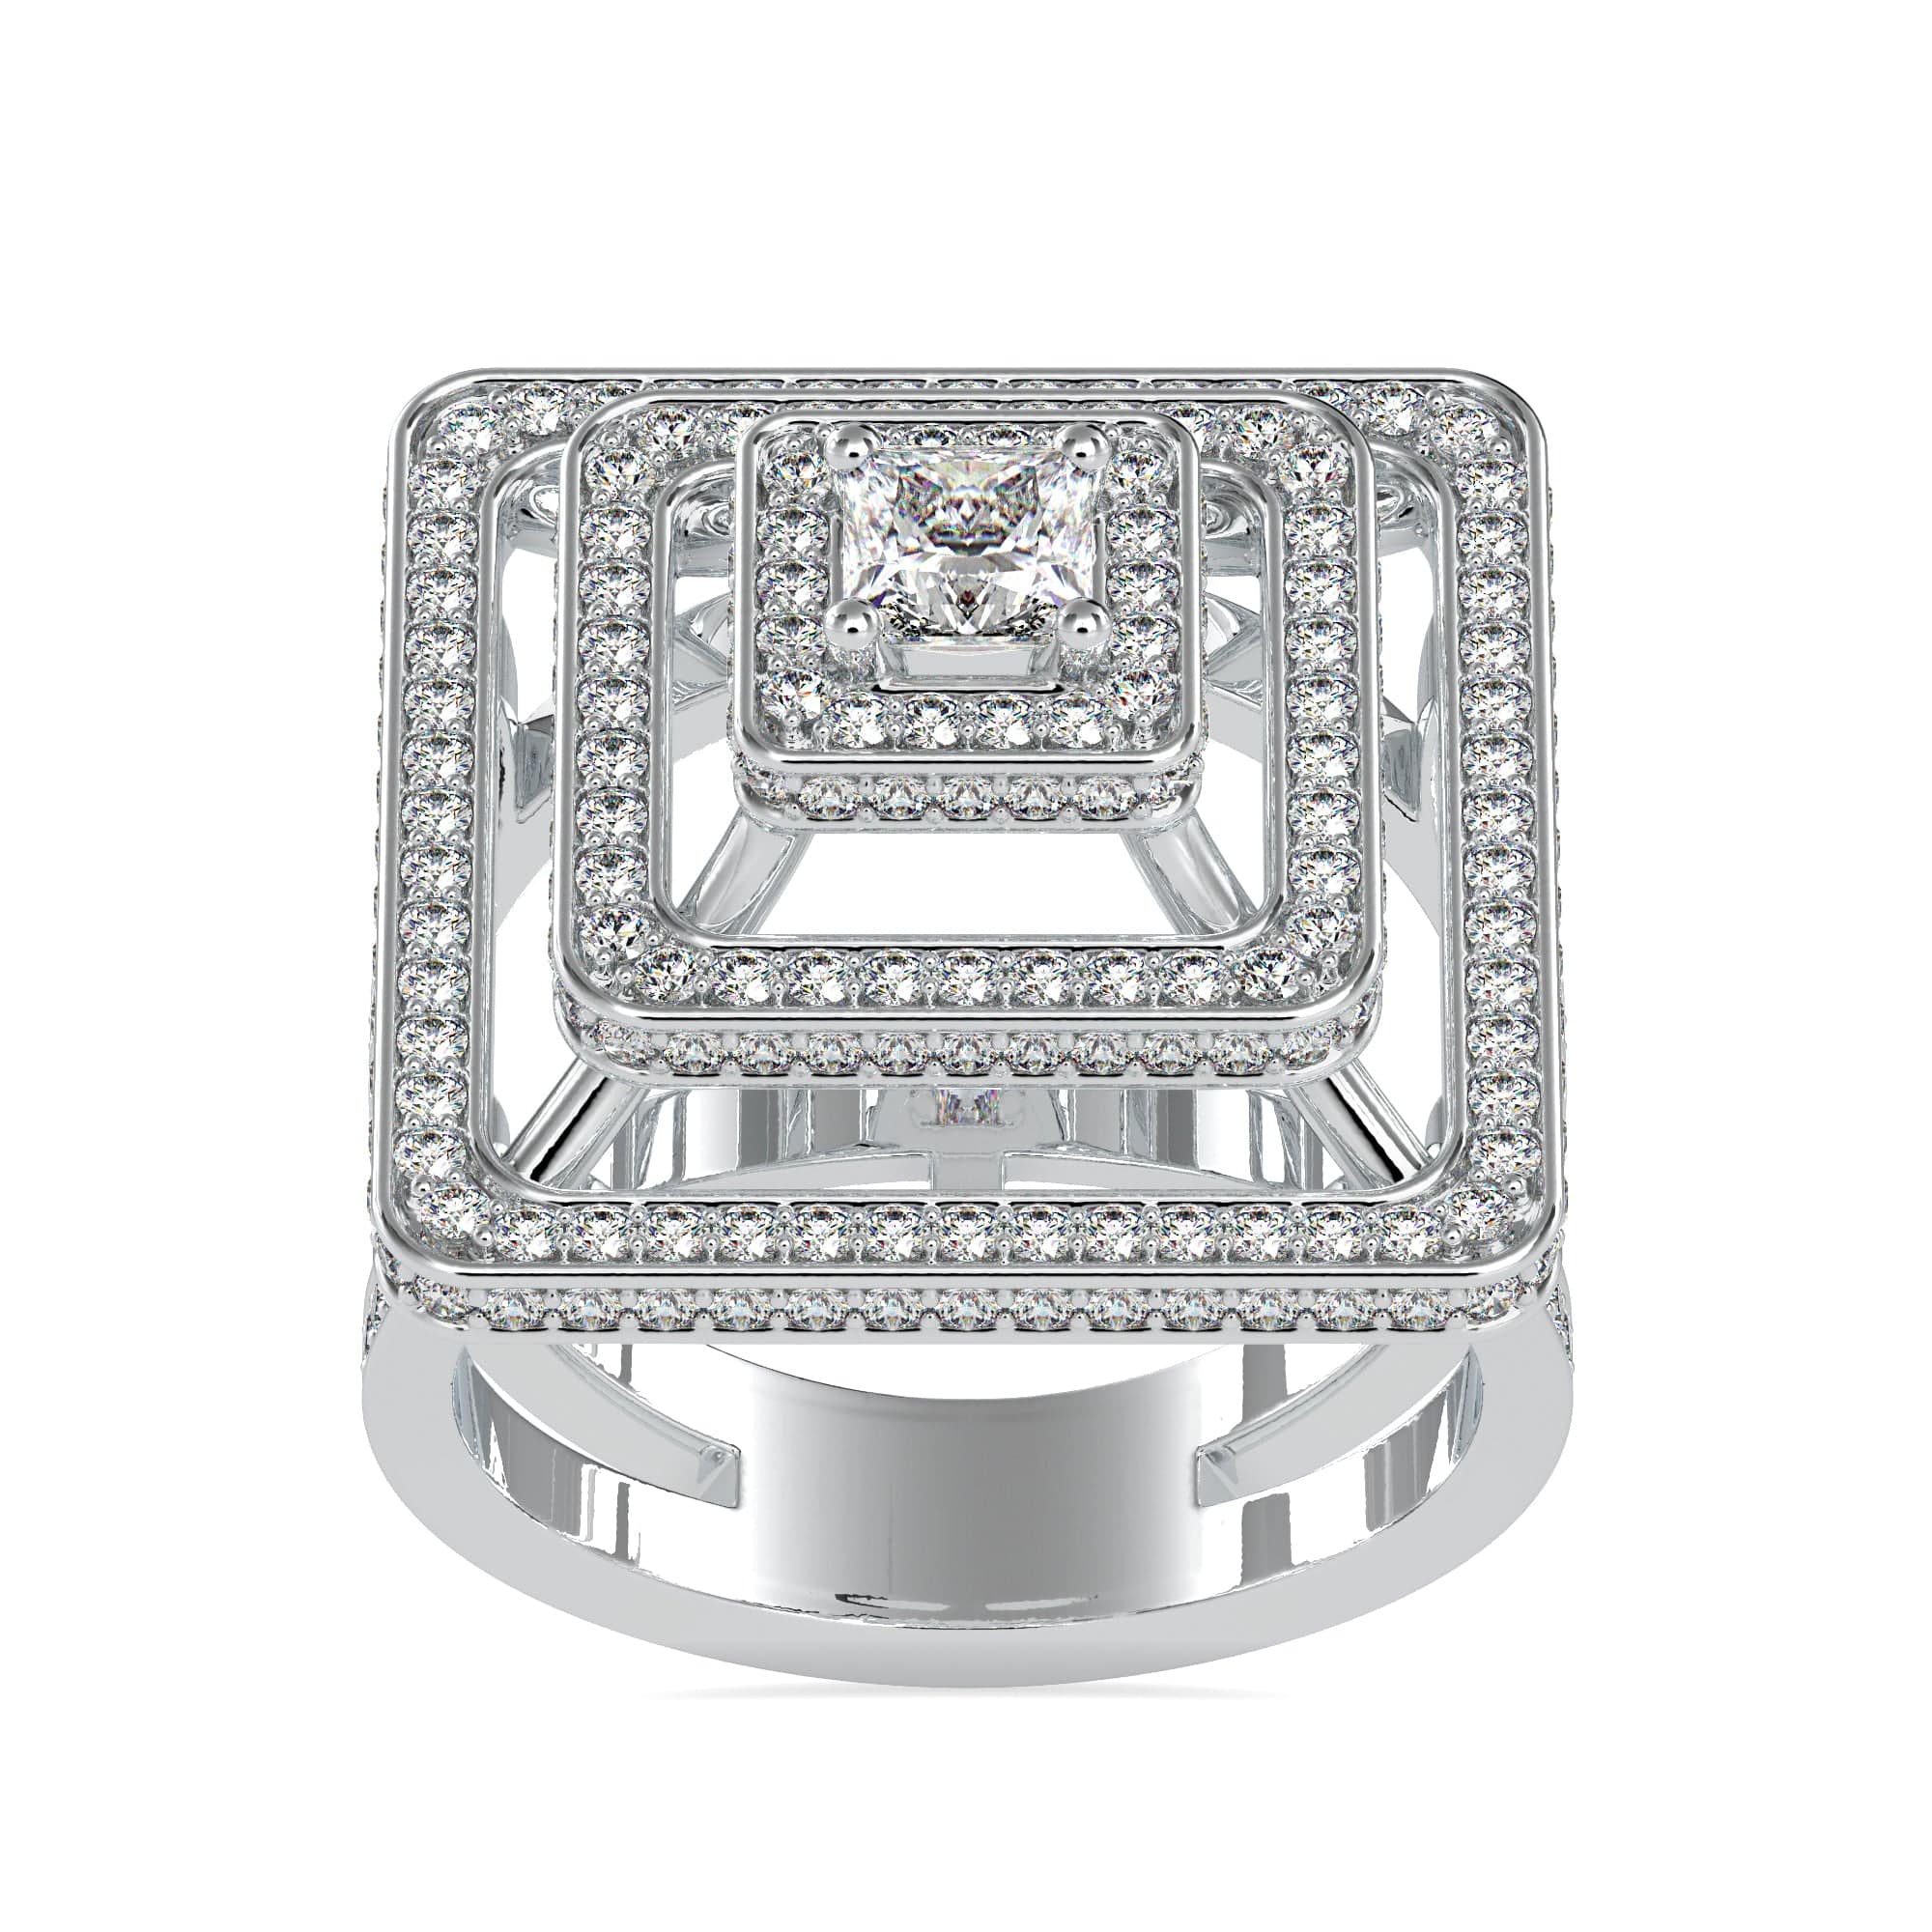 Buy Love For Square Diamond Ring | kasturidiamond